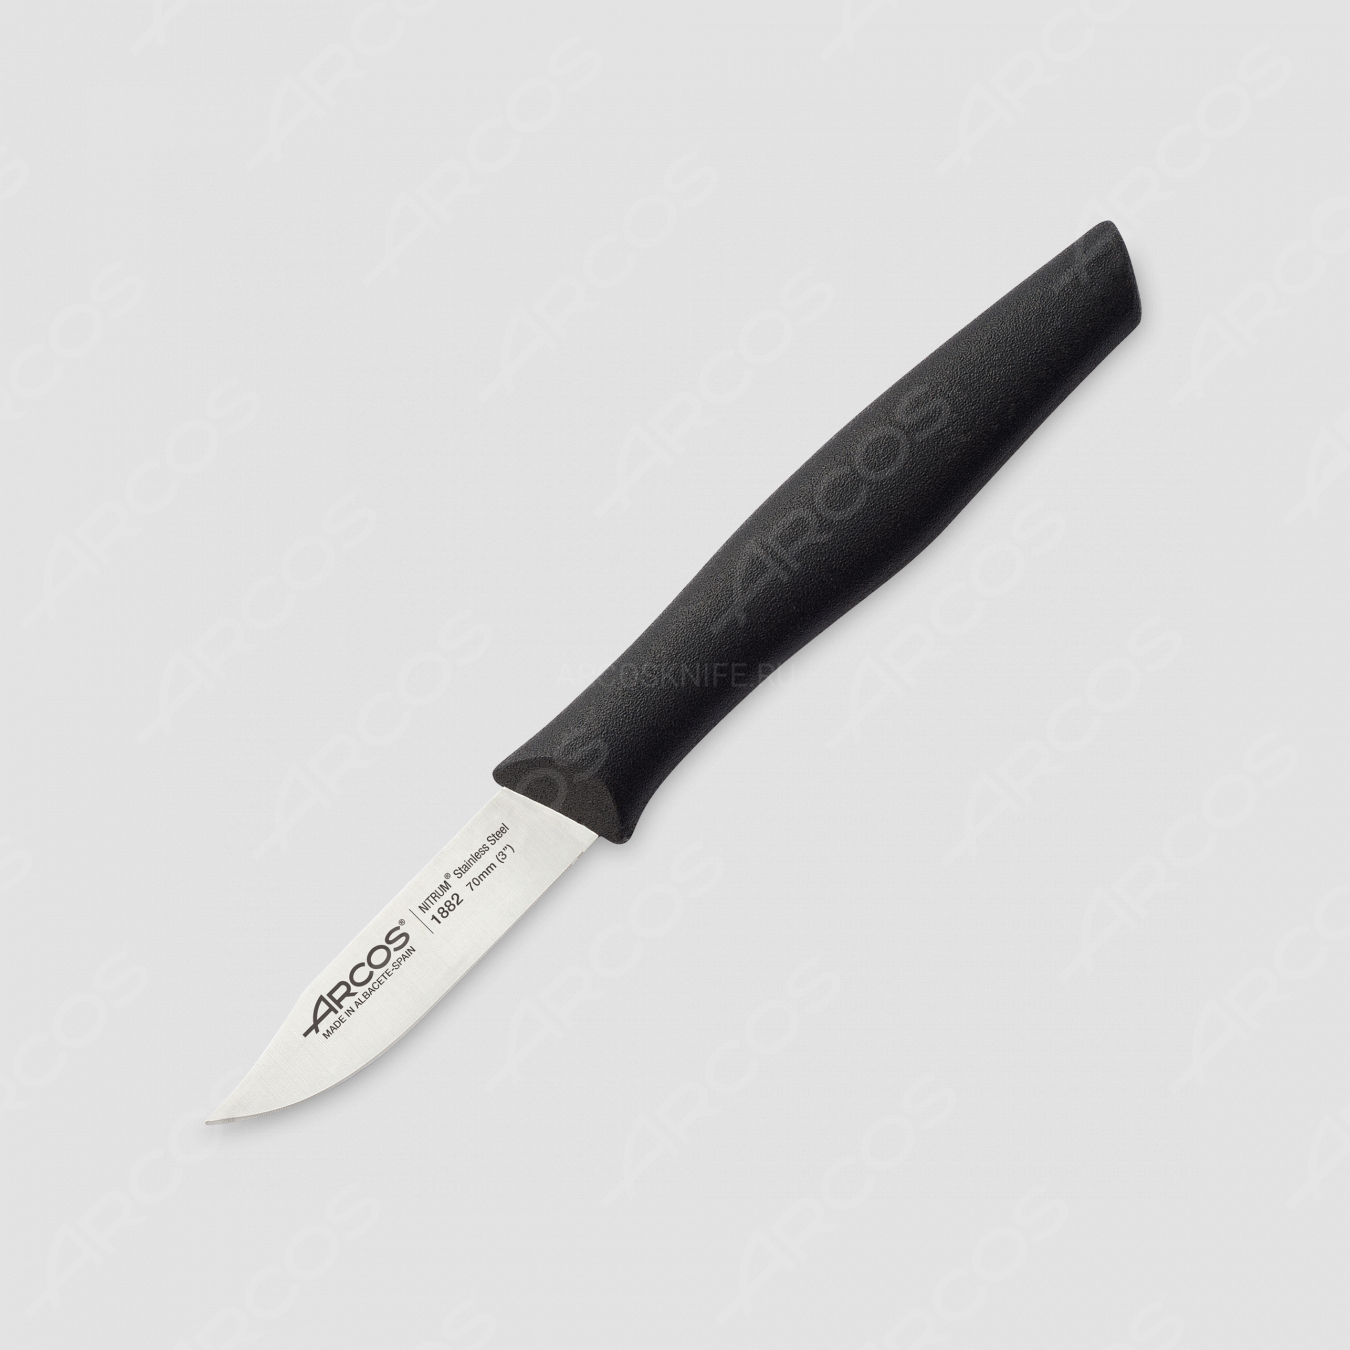 Нож кухонный для чистки 7 см, рукоять черная, серия Nova, ARCOS, Испания